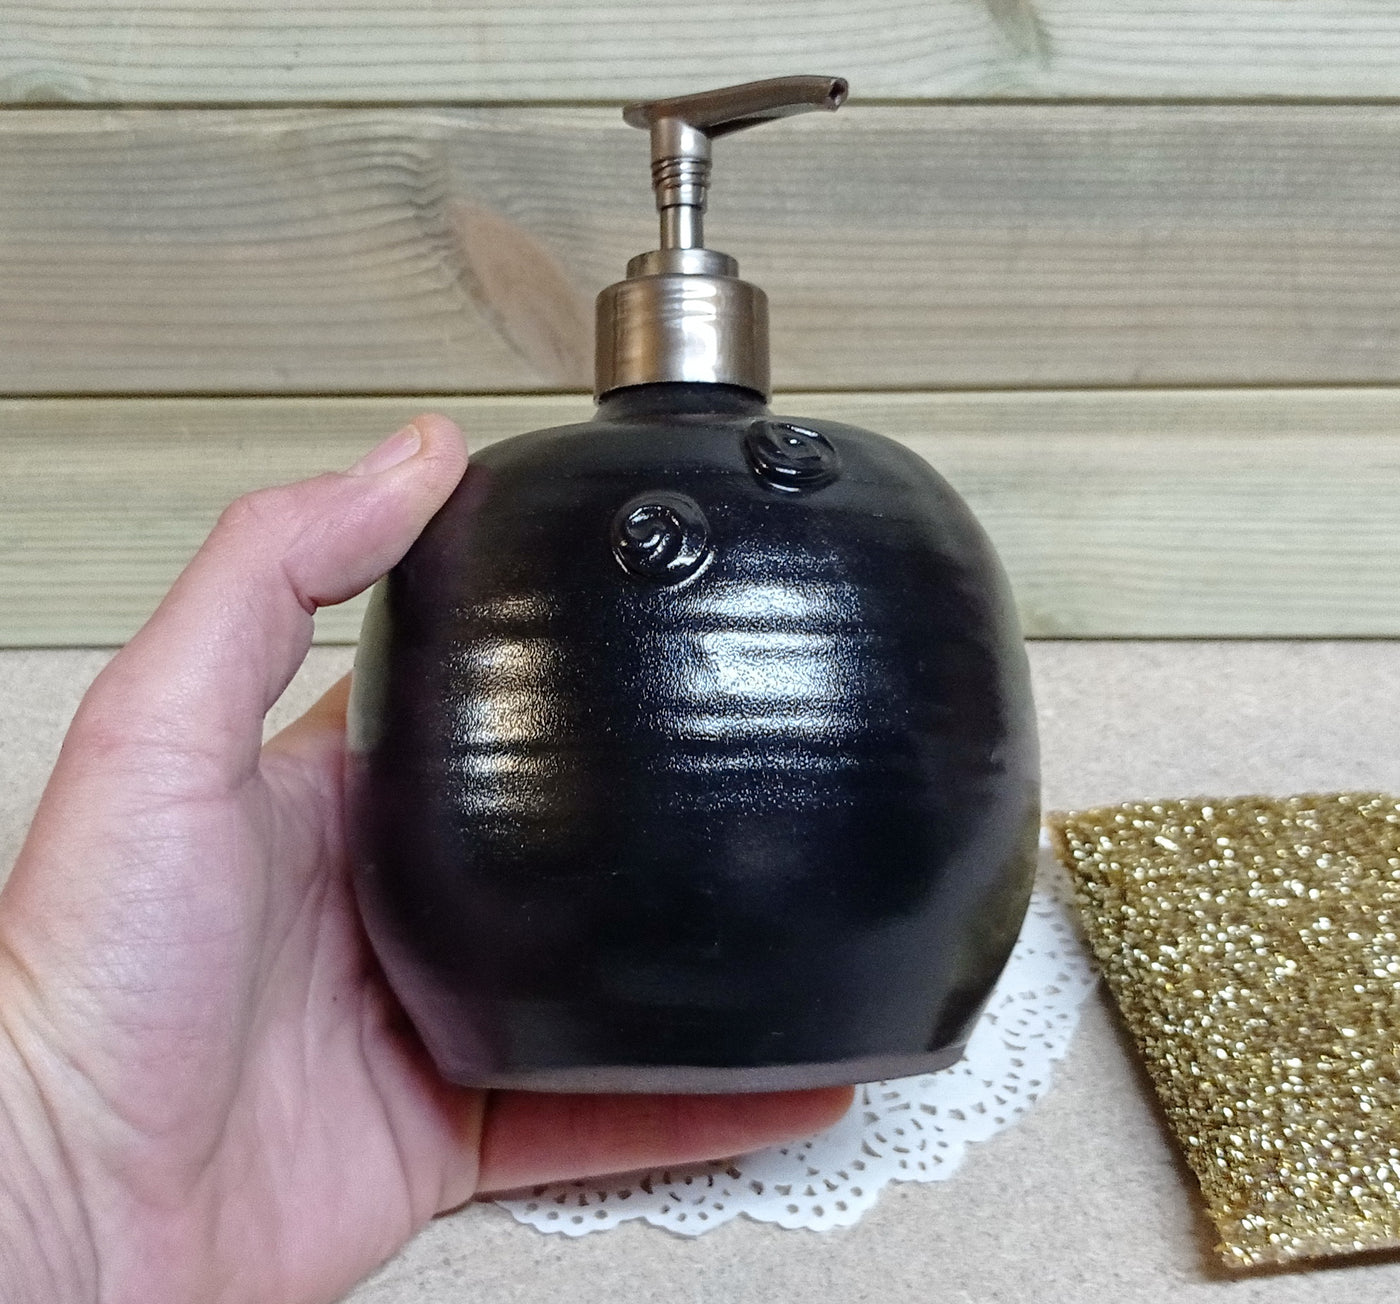 בקבוק  שמנמן לסבון נוזלי בשחור